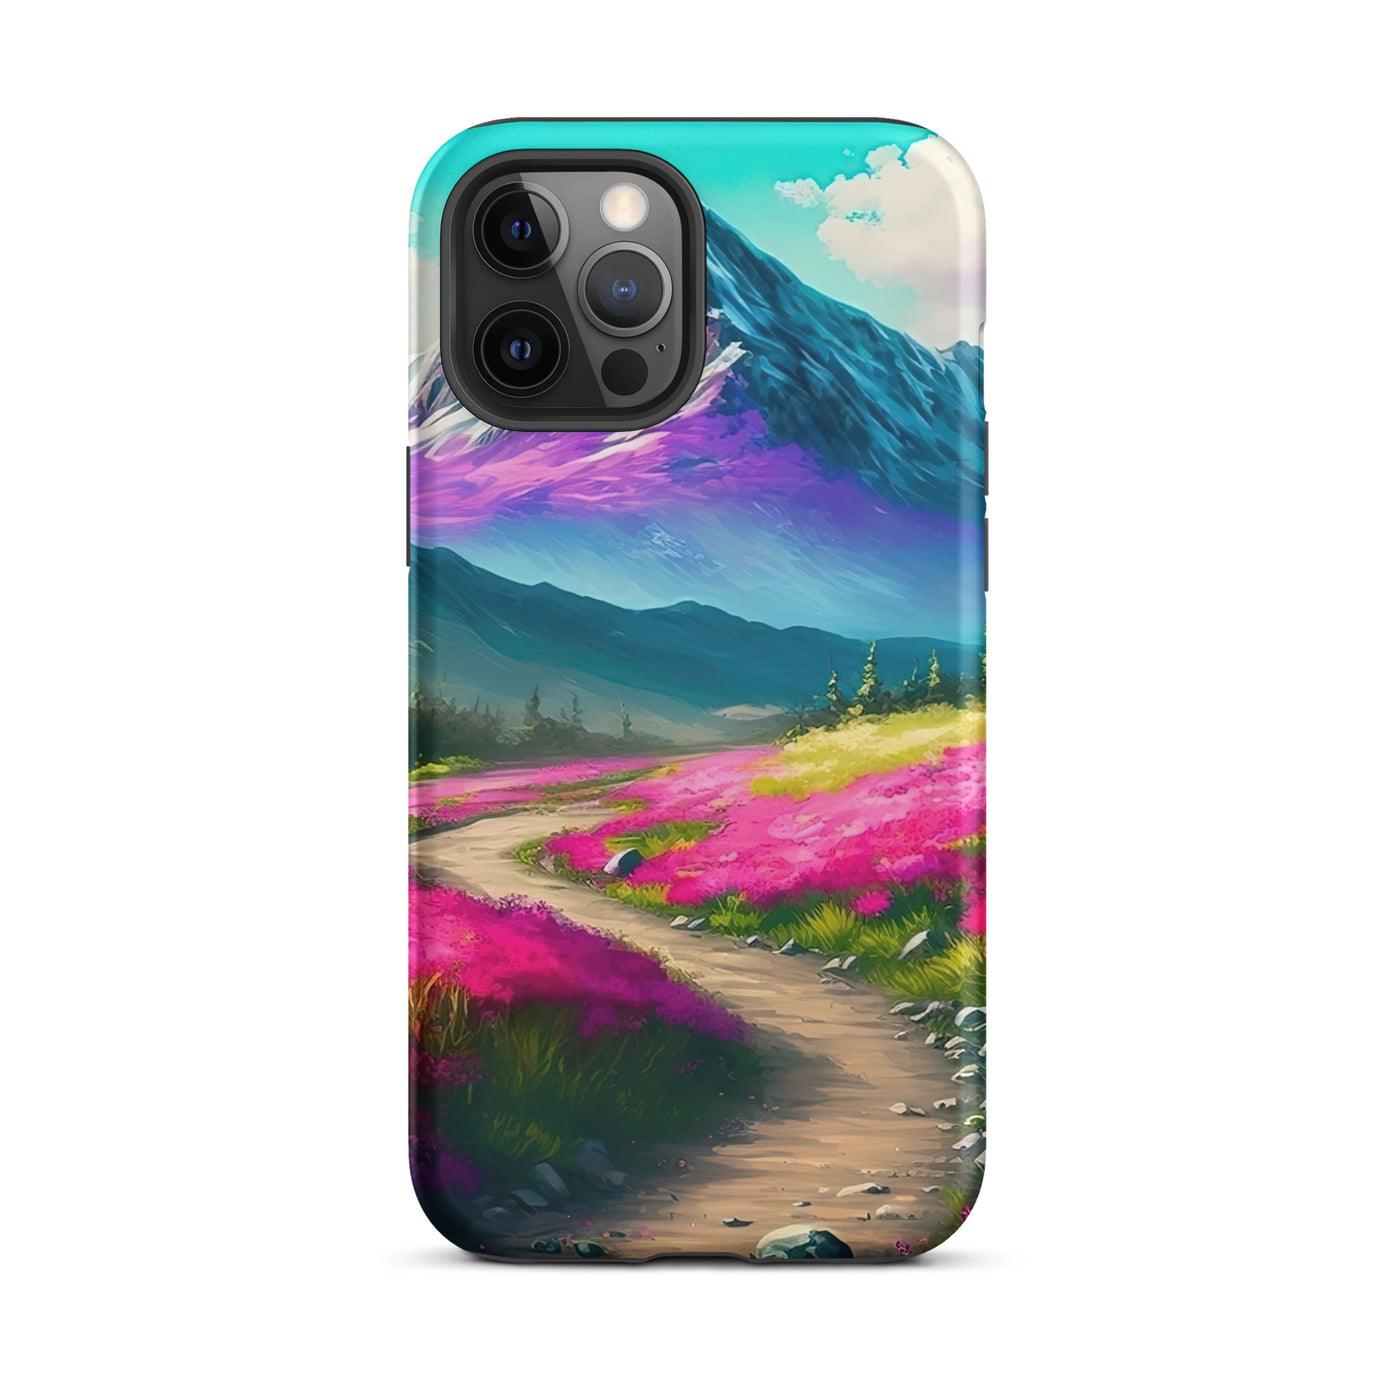 Berg, pinke Blumen und Wanderweg - Landschaftsmalerei - iPhone Schutzhülle (robust) berge xxx iPhone 12 Pro Max